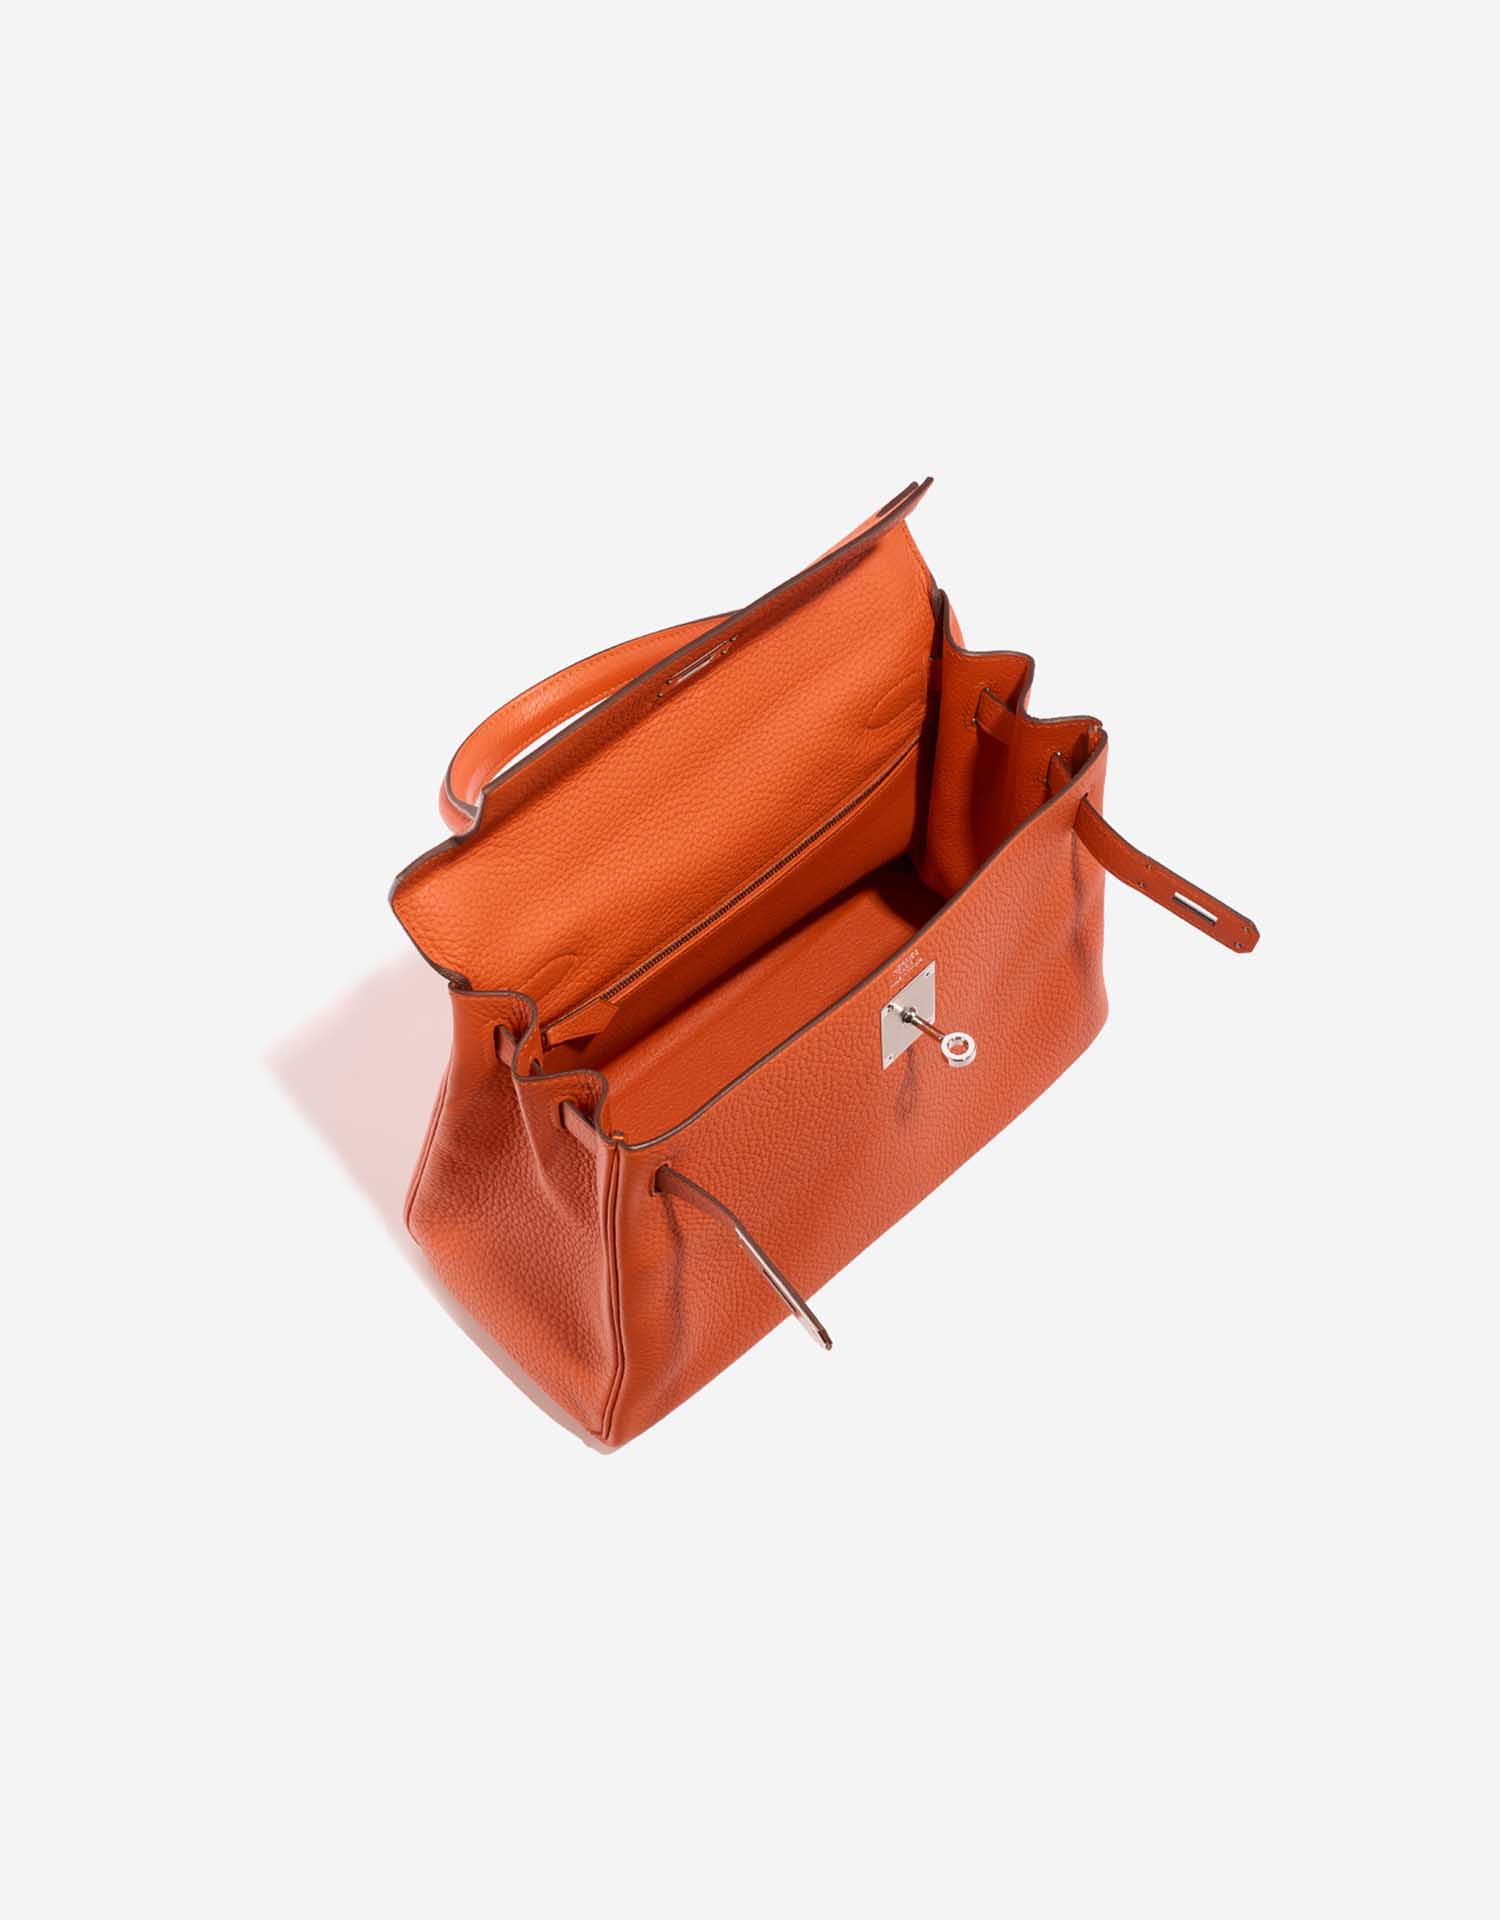 Hermès Kelly 28 Feu Inside | Verkaufen Sie Ihre Designer-Tasche auf Saclab.com